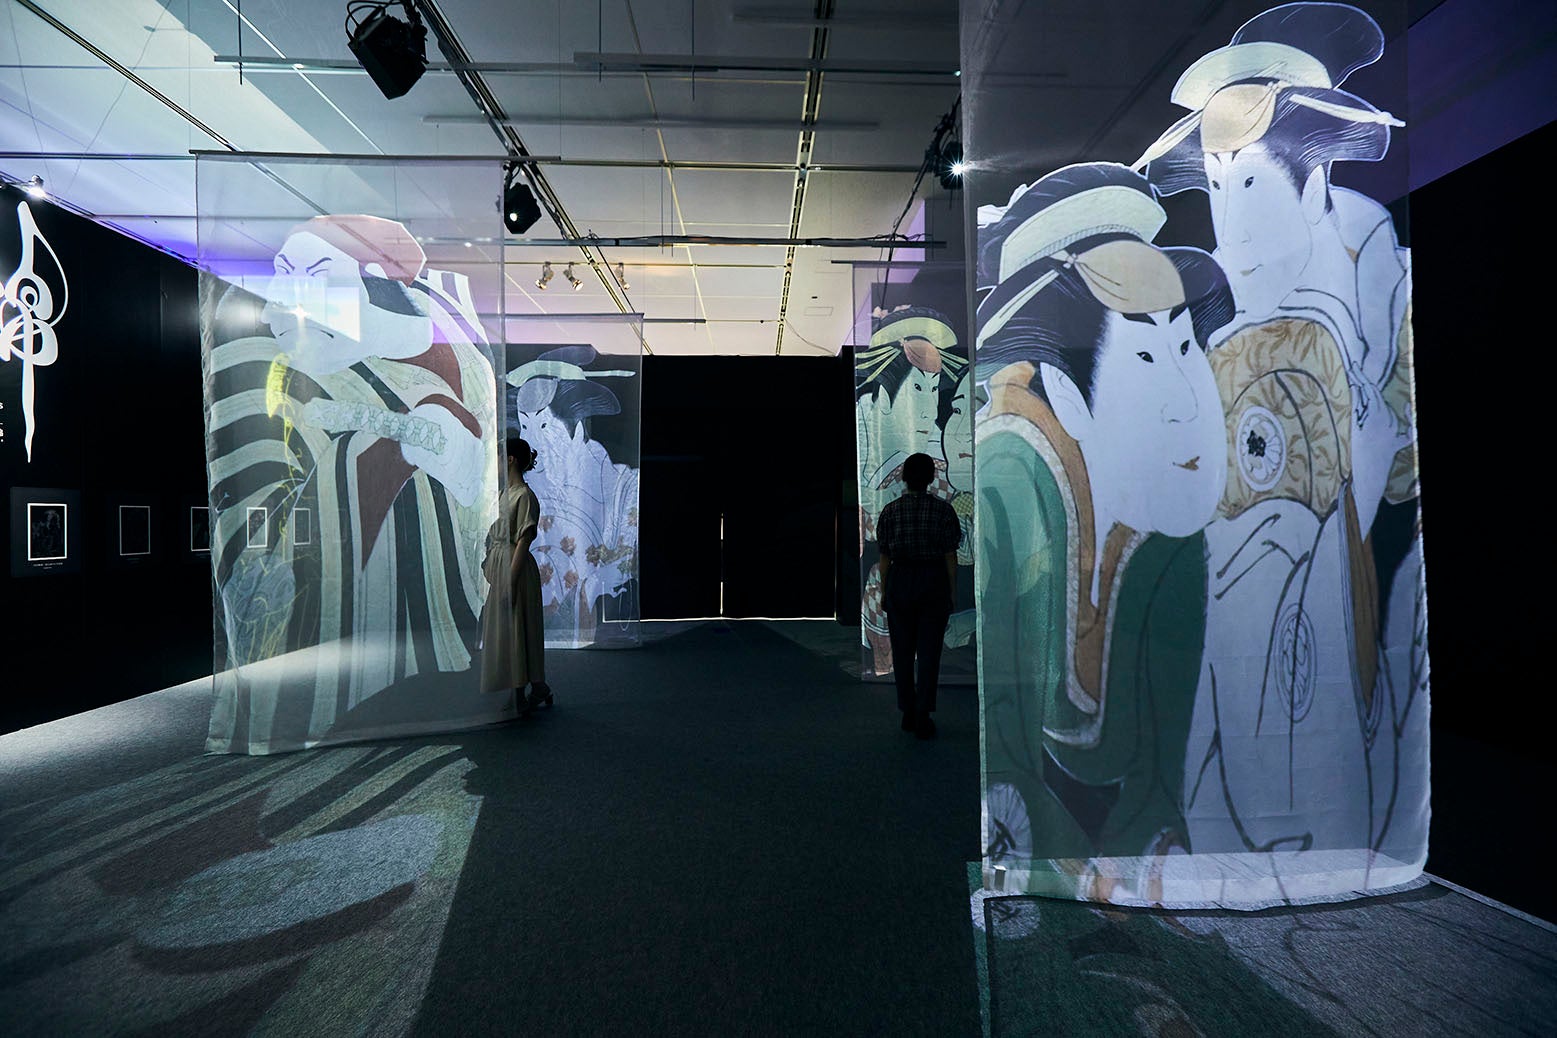 一旗プロデュース「動き出す浮世絵展 MILANO」をイタリア・ミラノで開催。名古屋で8万人超を動員した立体映像...